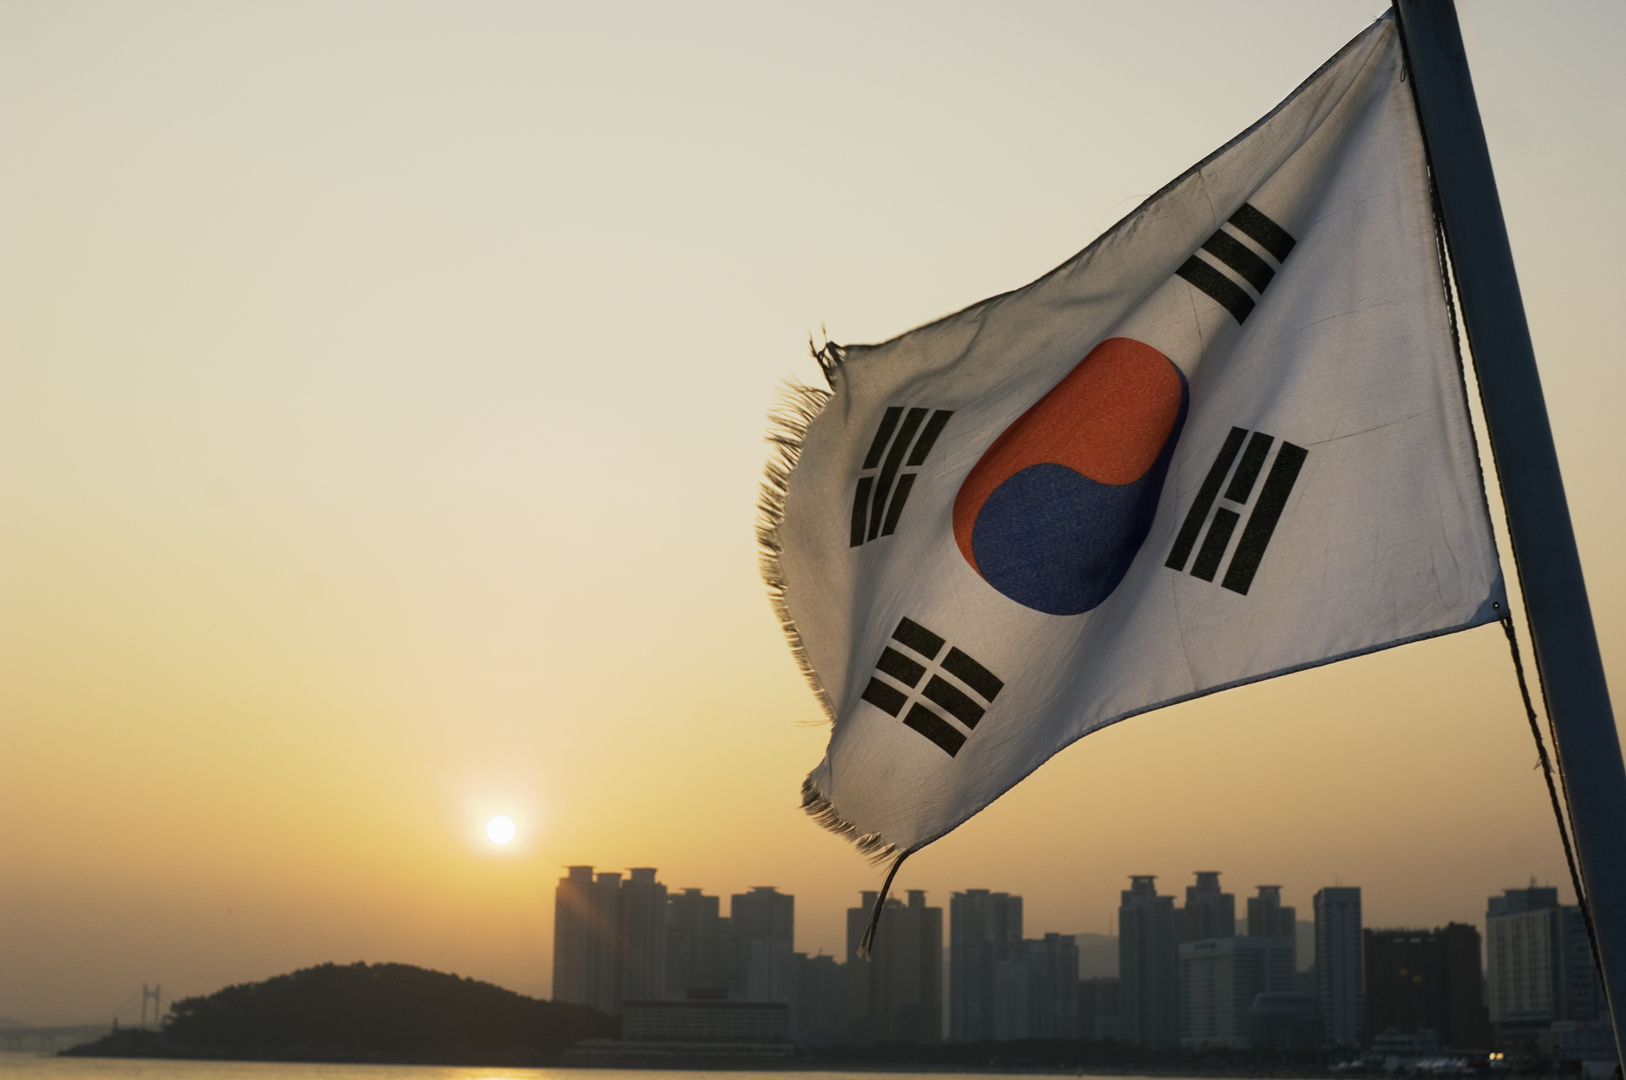 كوريا الجنوبية ومجلس التعاون الخليجي يعقدان جولة جديدة من محادثات اتفاقية التجارة الحرة